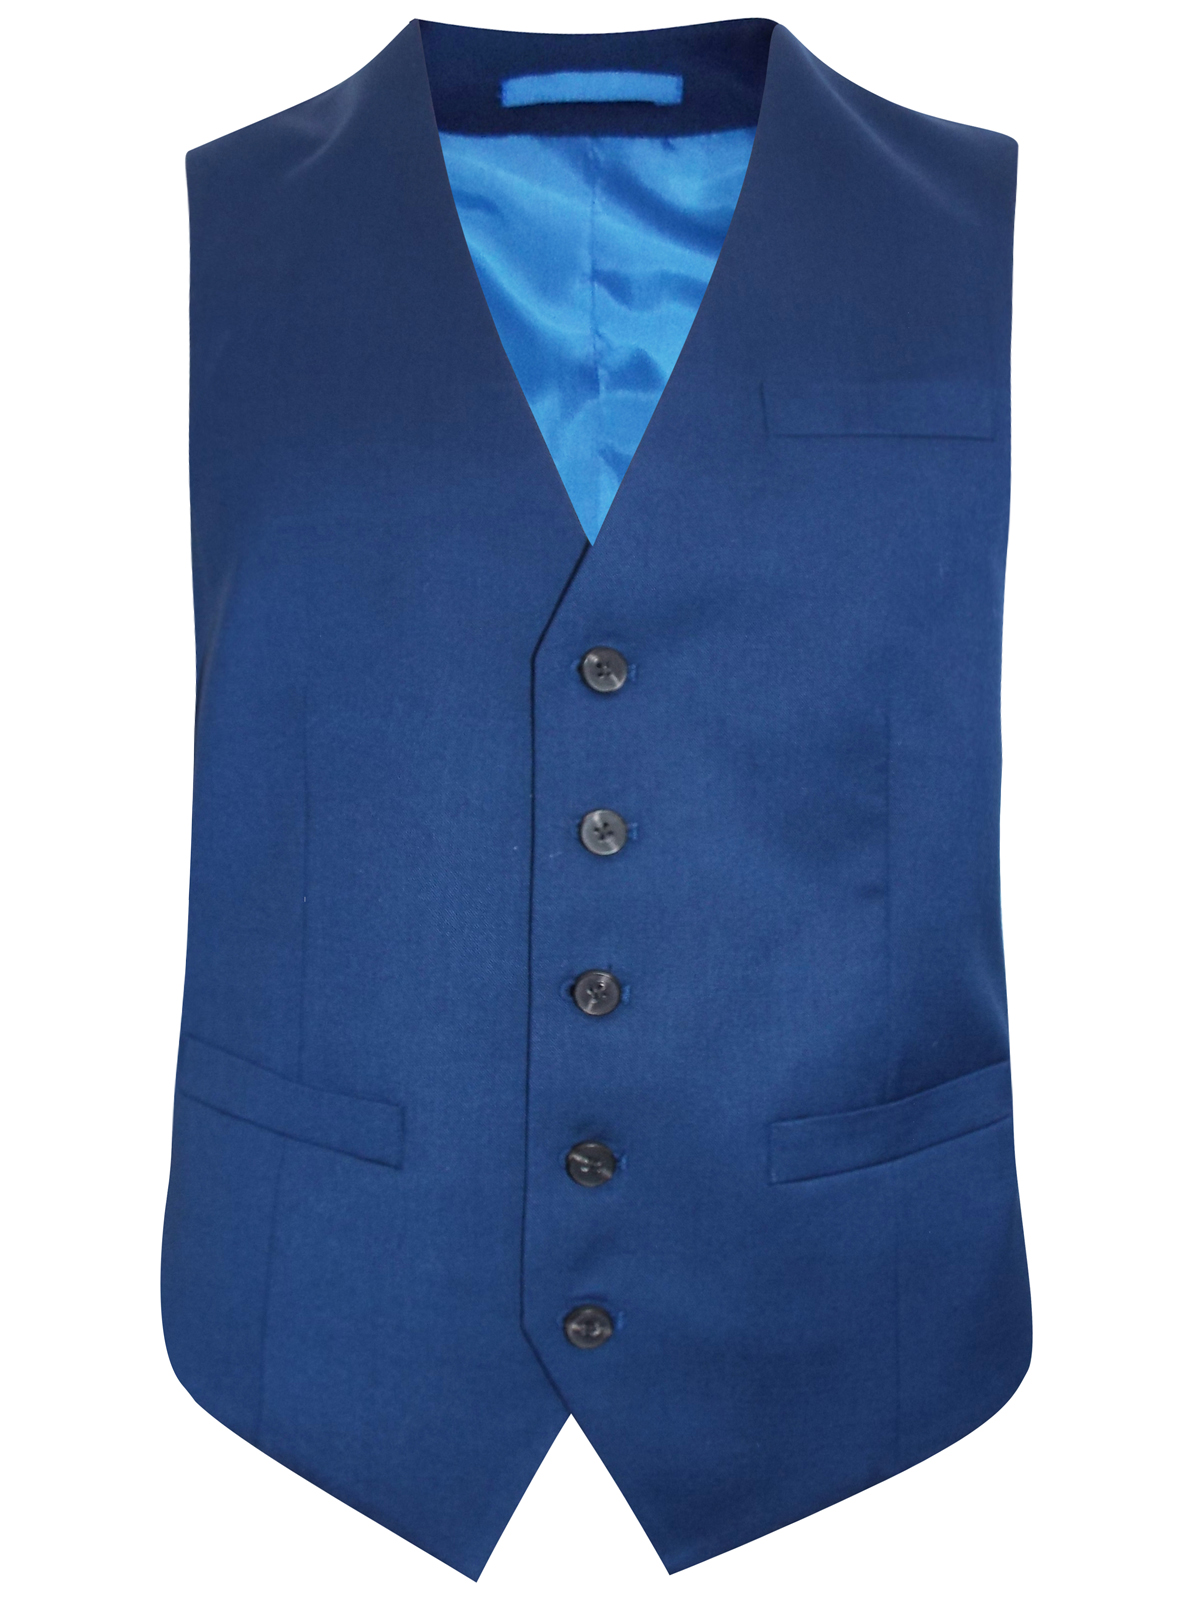 Jack REID - - Jack Reid BLUE Wool Blend Tailored Fit Waistcoat - Size ...